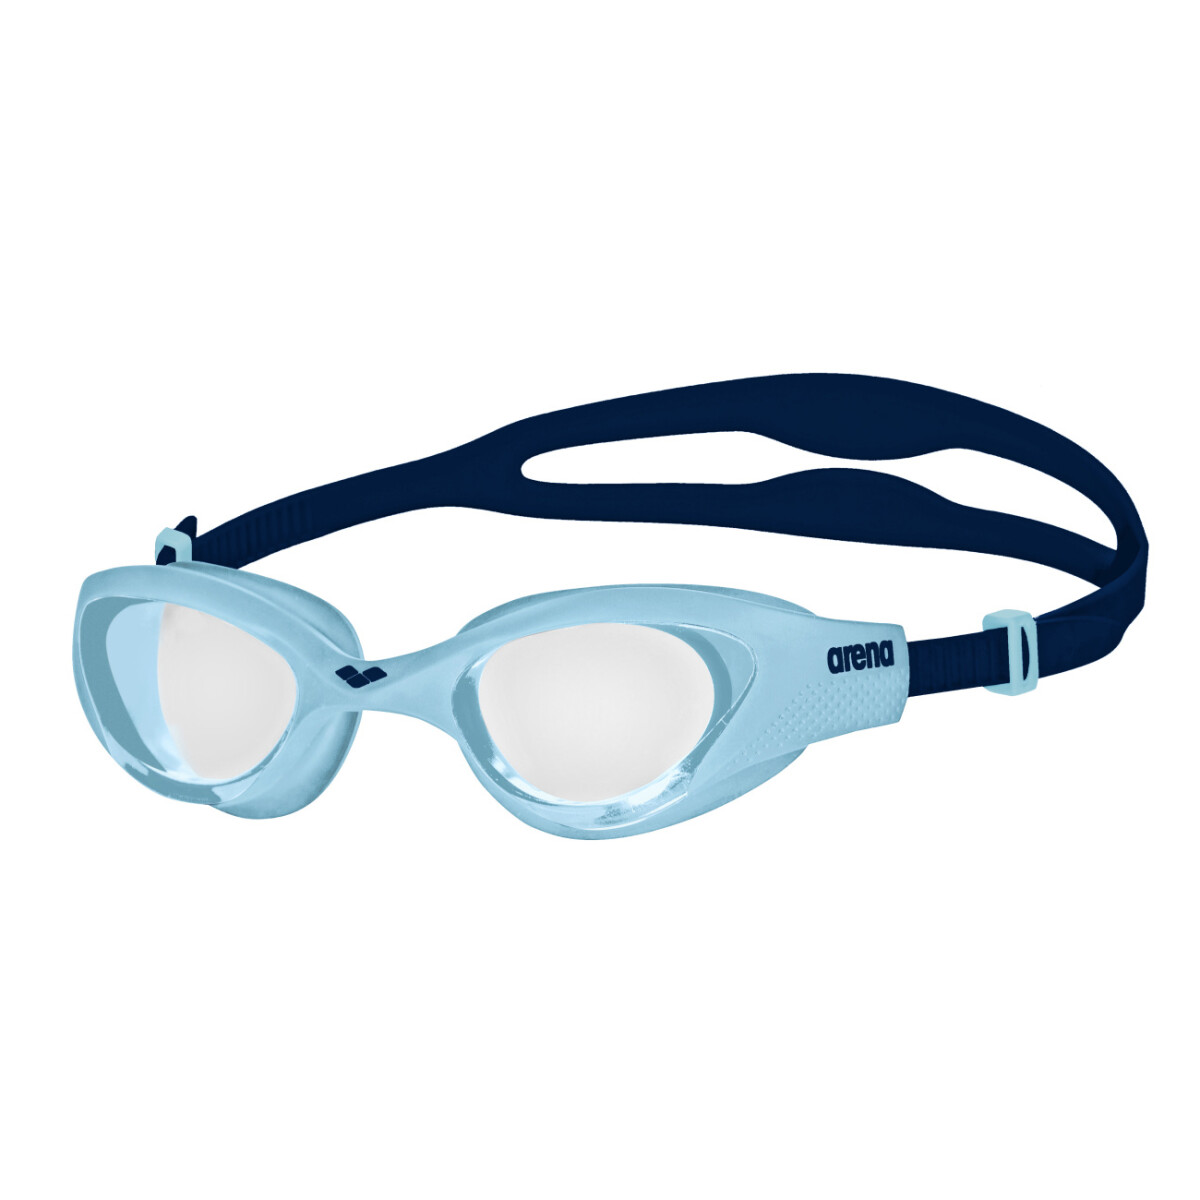 Lentes De Natacion Para Niños Arena The One Junior Goggles (6 a 12 años) - Transparente, Cyan y Azul 